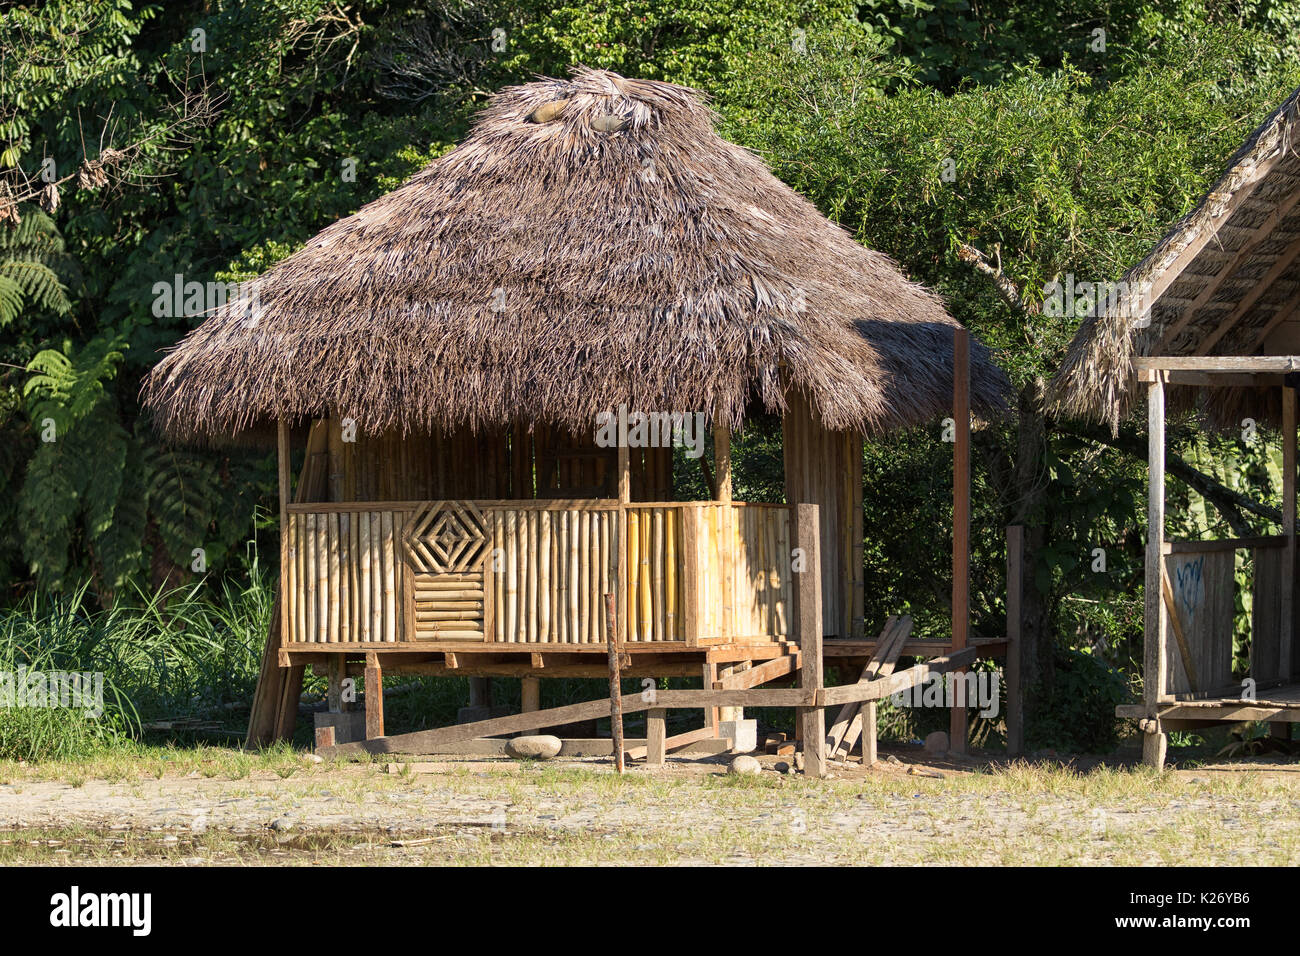 Juni 6, 2017 Misahualli, Ecuador: kleine Wohnung shack von Bambus im Amazonasgebiet gemacht Stockfoto